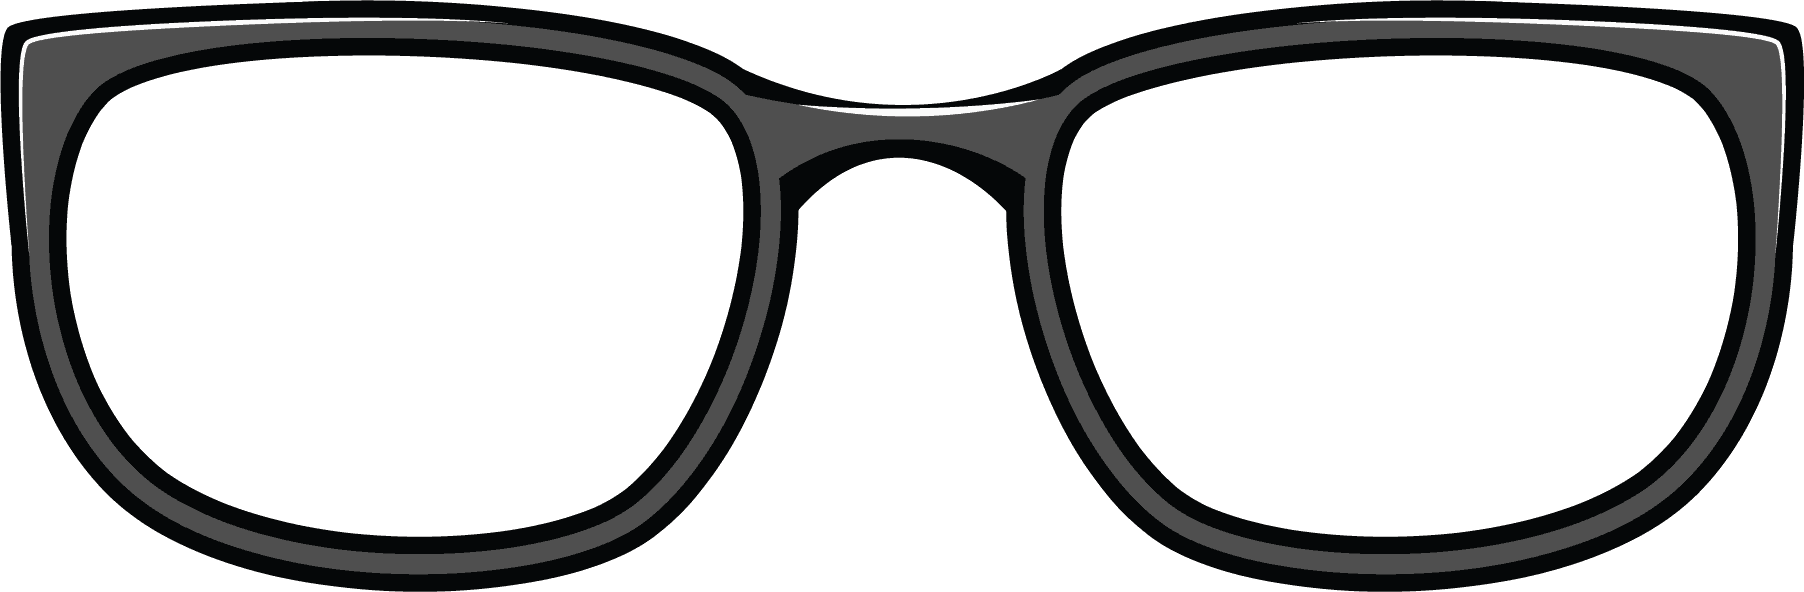 Clipart eye glass frames